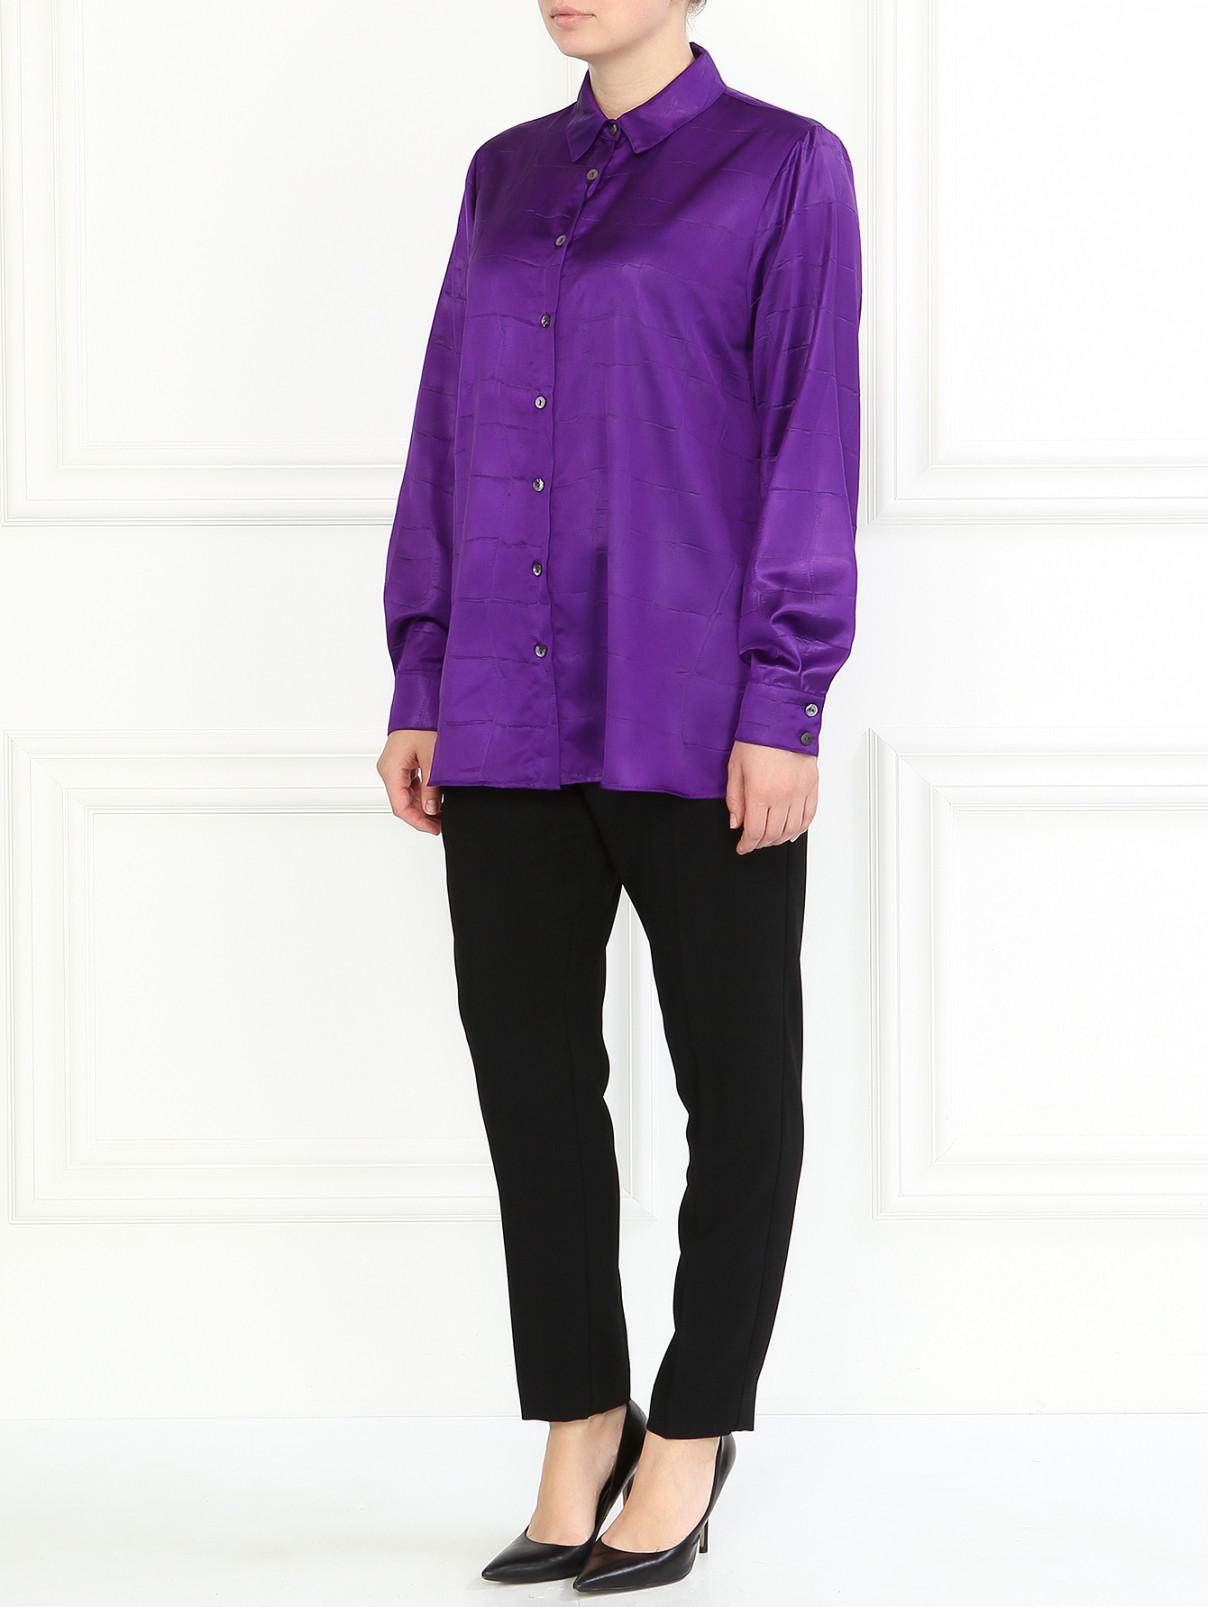 Блуза с принтом клетка Marina Rinaldi  –  Модель Общий вид  – Цвет:  Фиолетовый